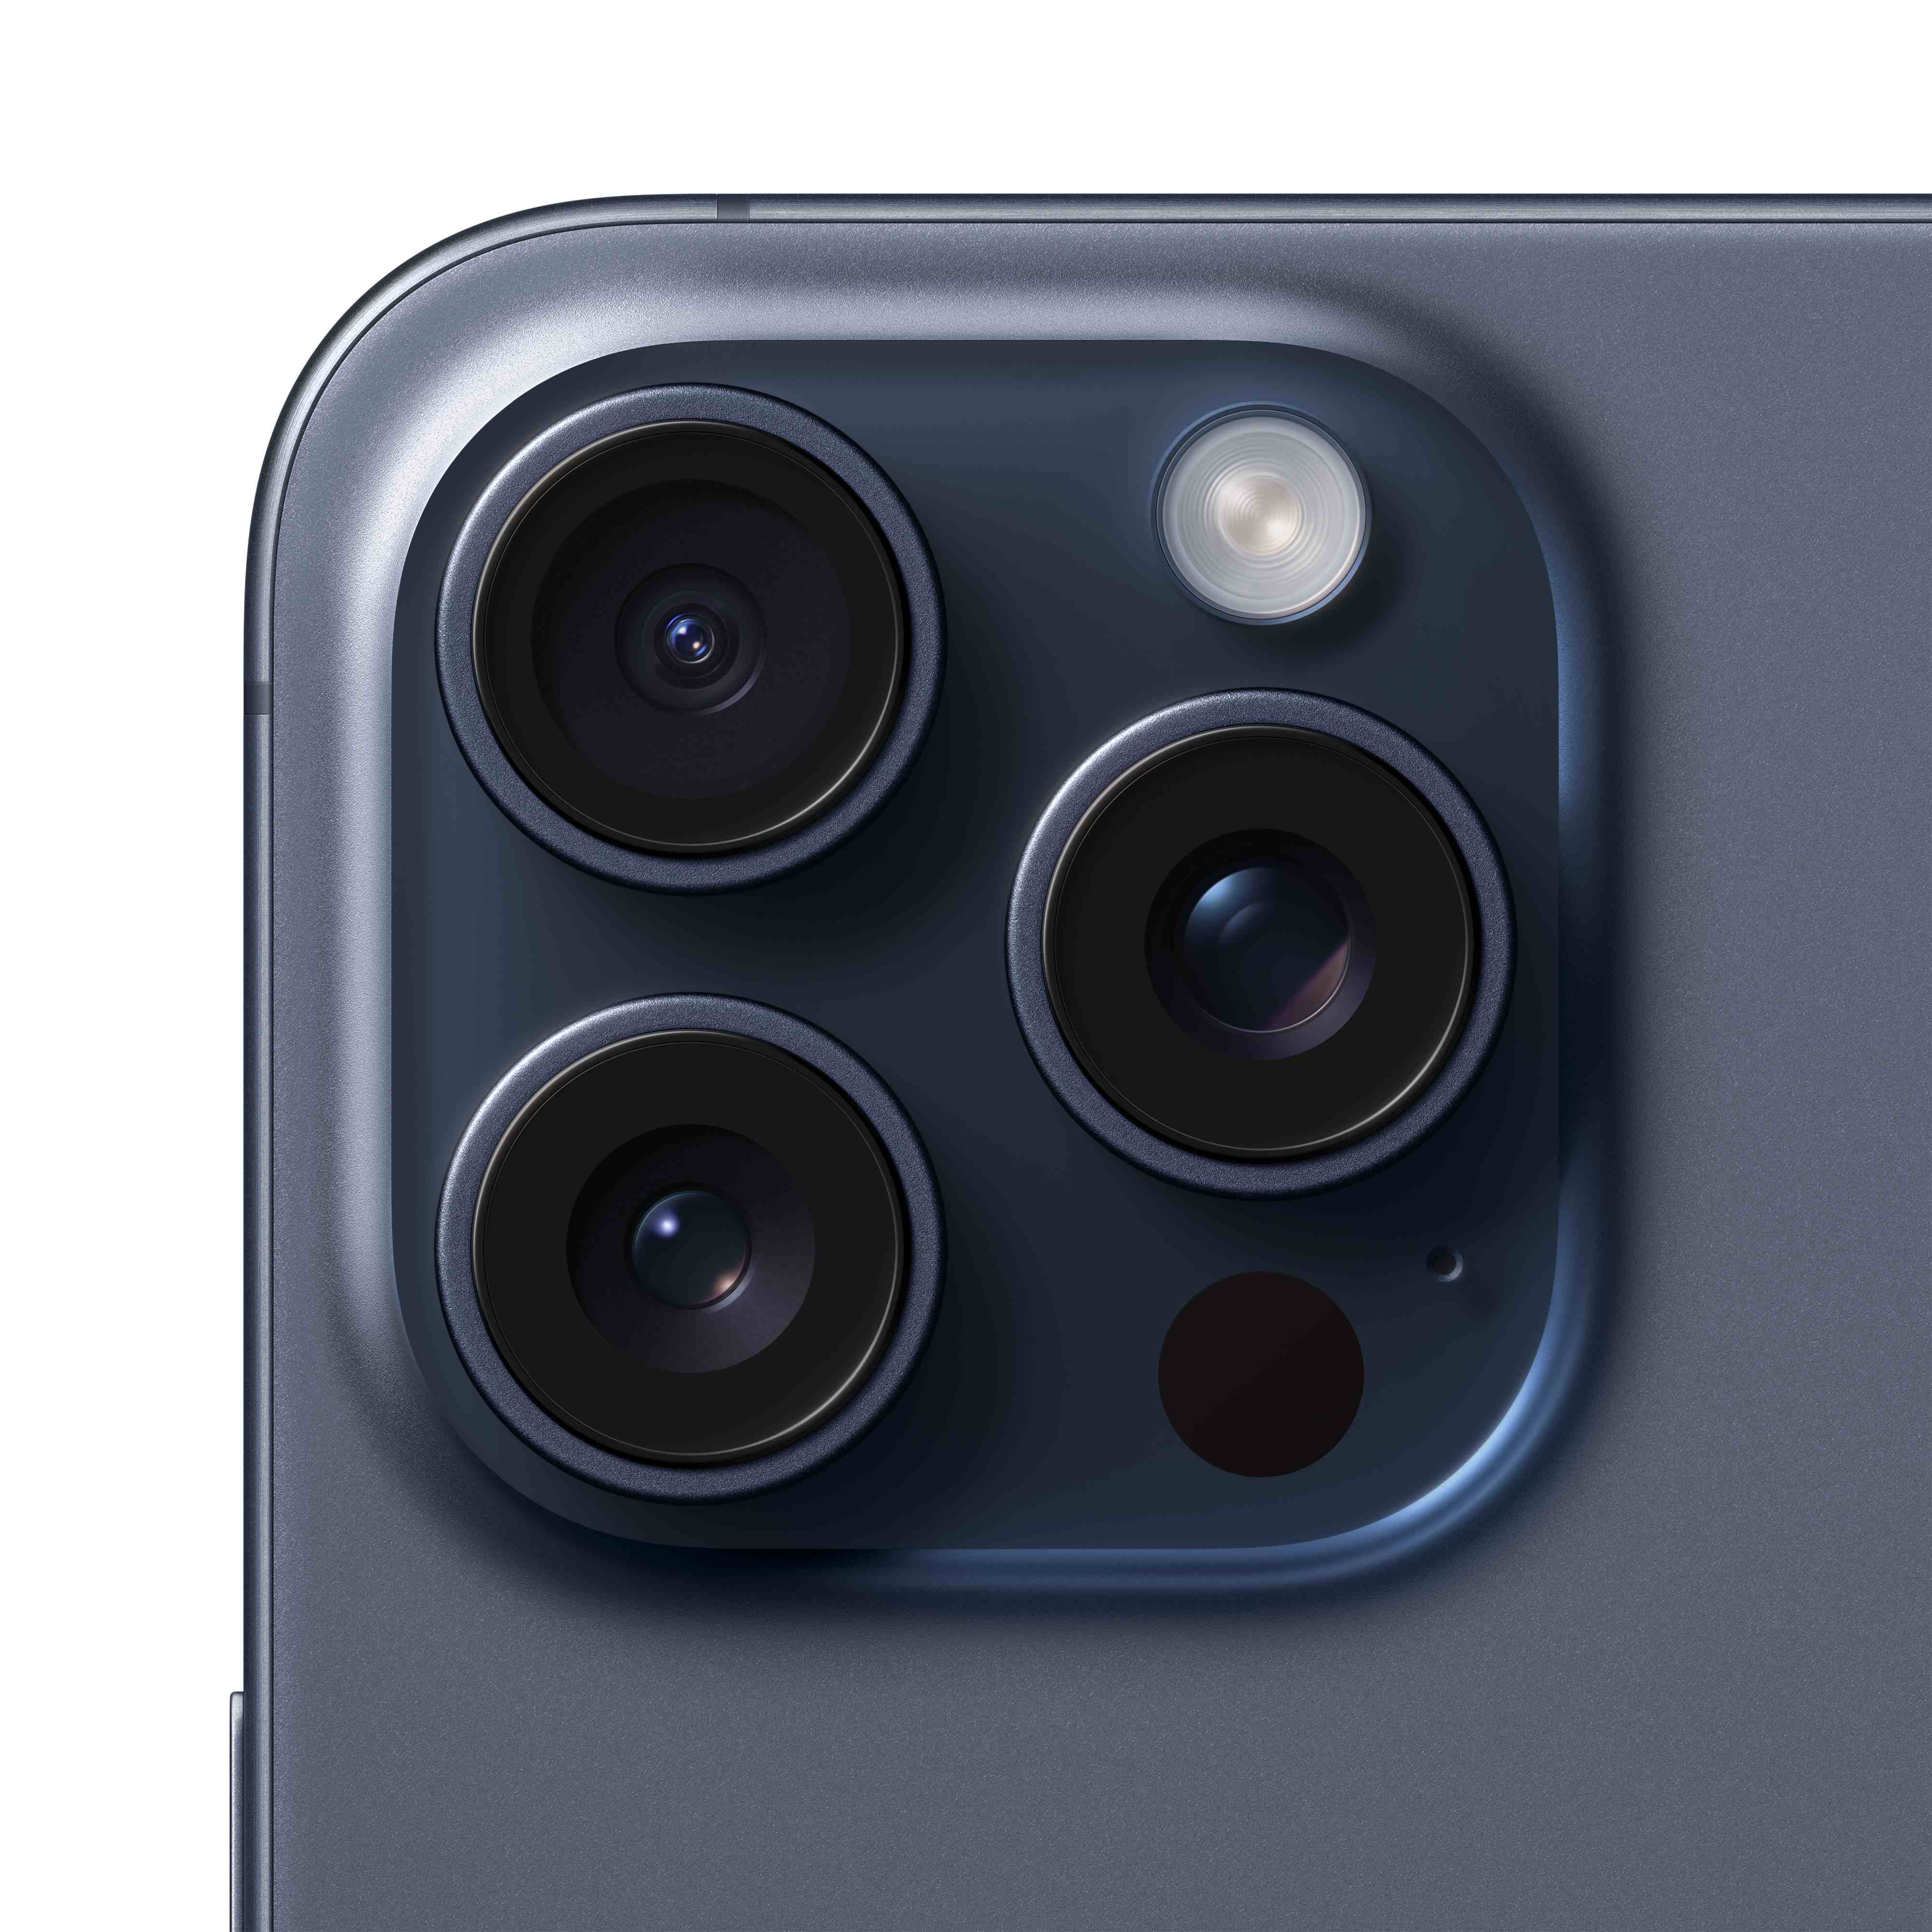 AT&T Apple iPhone 15 Pro Max 512GB Blue Titanium - image 5 of 10